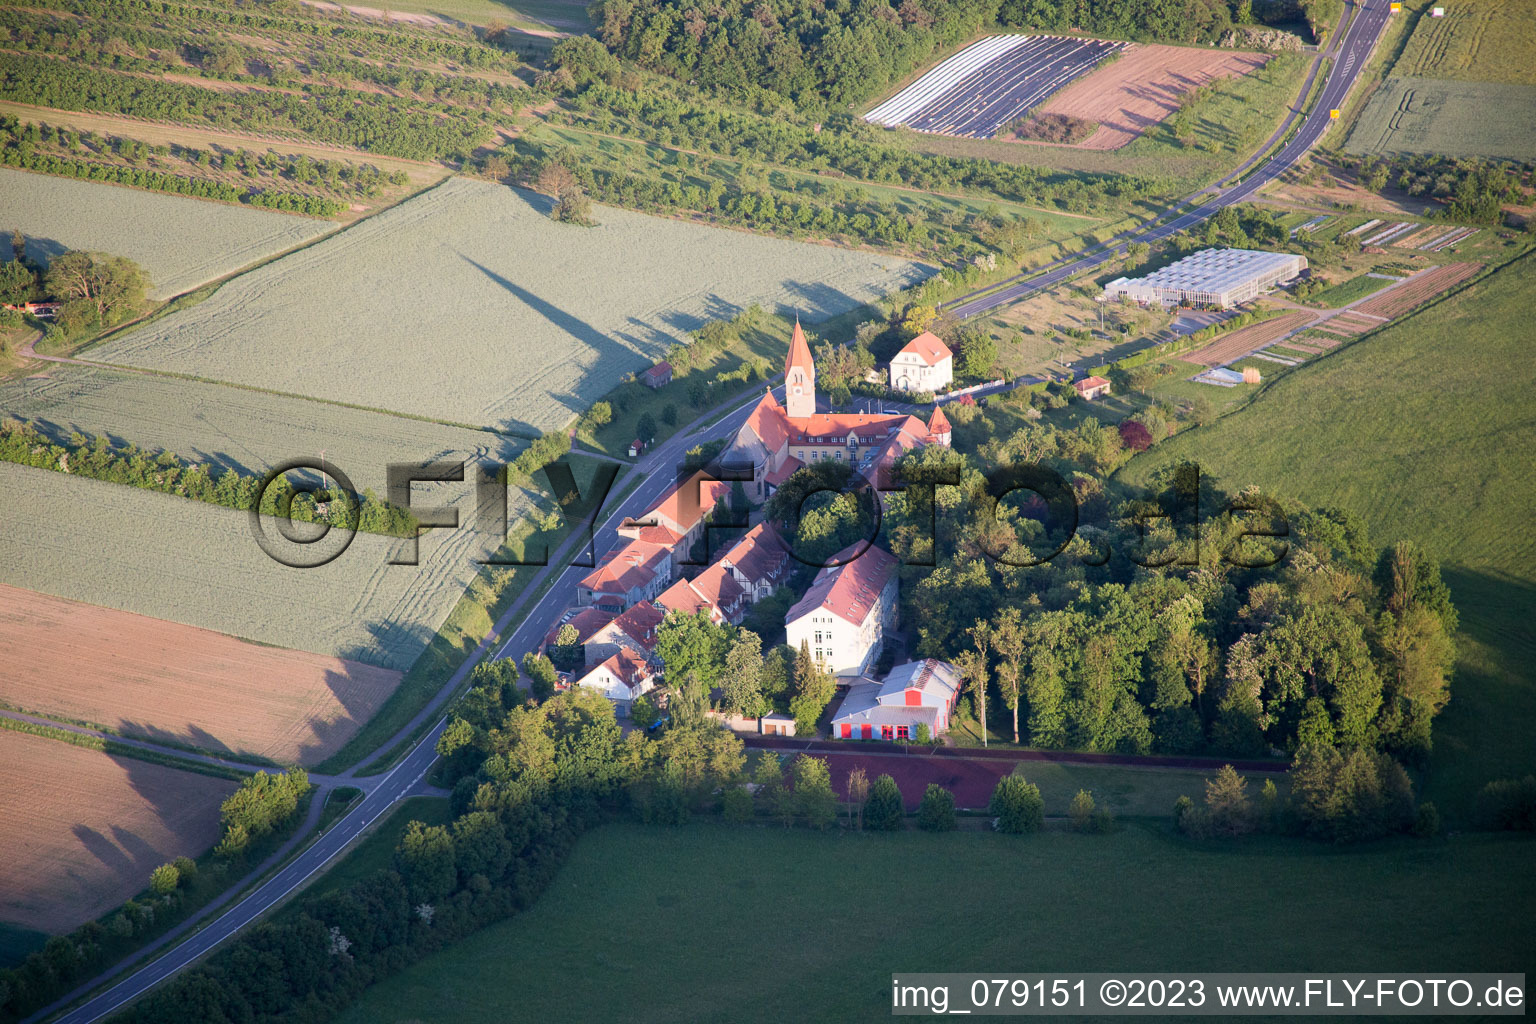 Luftbild von Gebäudekomplex des Mädchenpensionat Antonia-Werr-Zentrum im Kloster in Kloster St. Ludwig in Kolitzheim im Bundesland Bayern, Deutschland